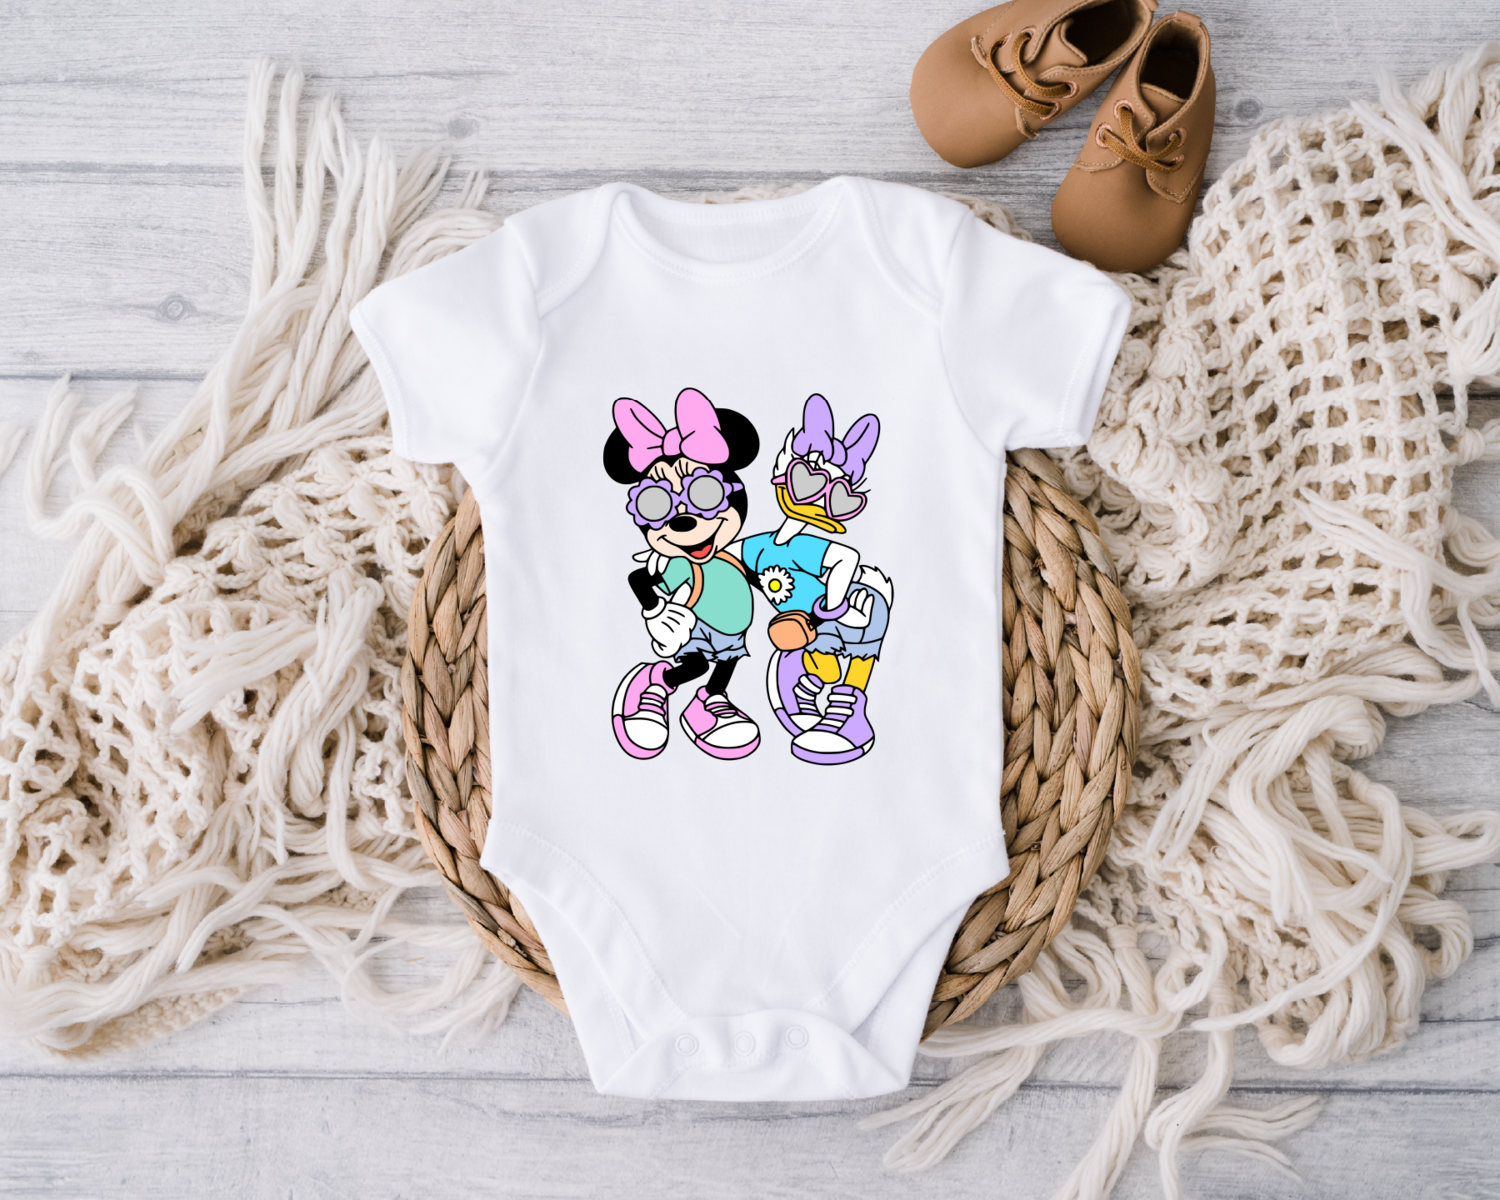 Disney Baby Onesie, Minnie and Daisy Baby Bodysuit